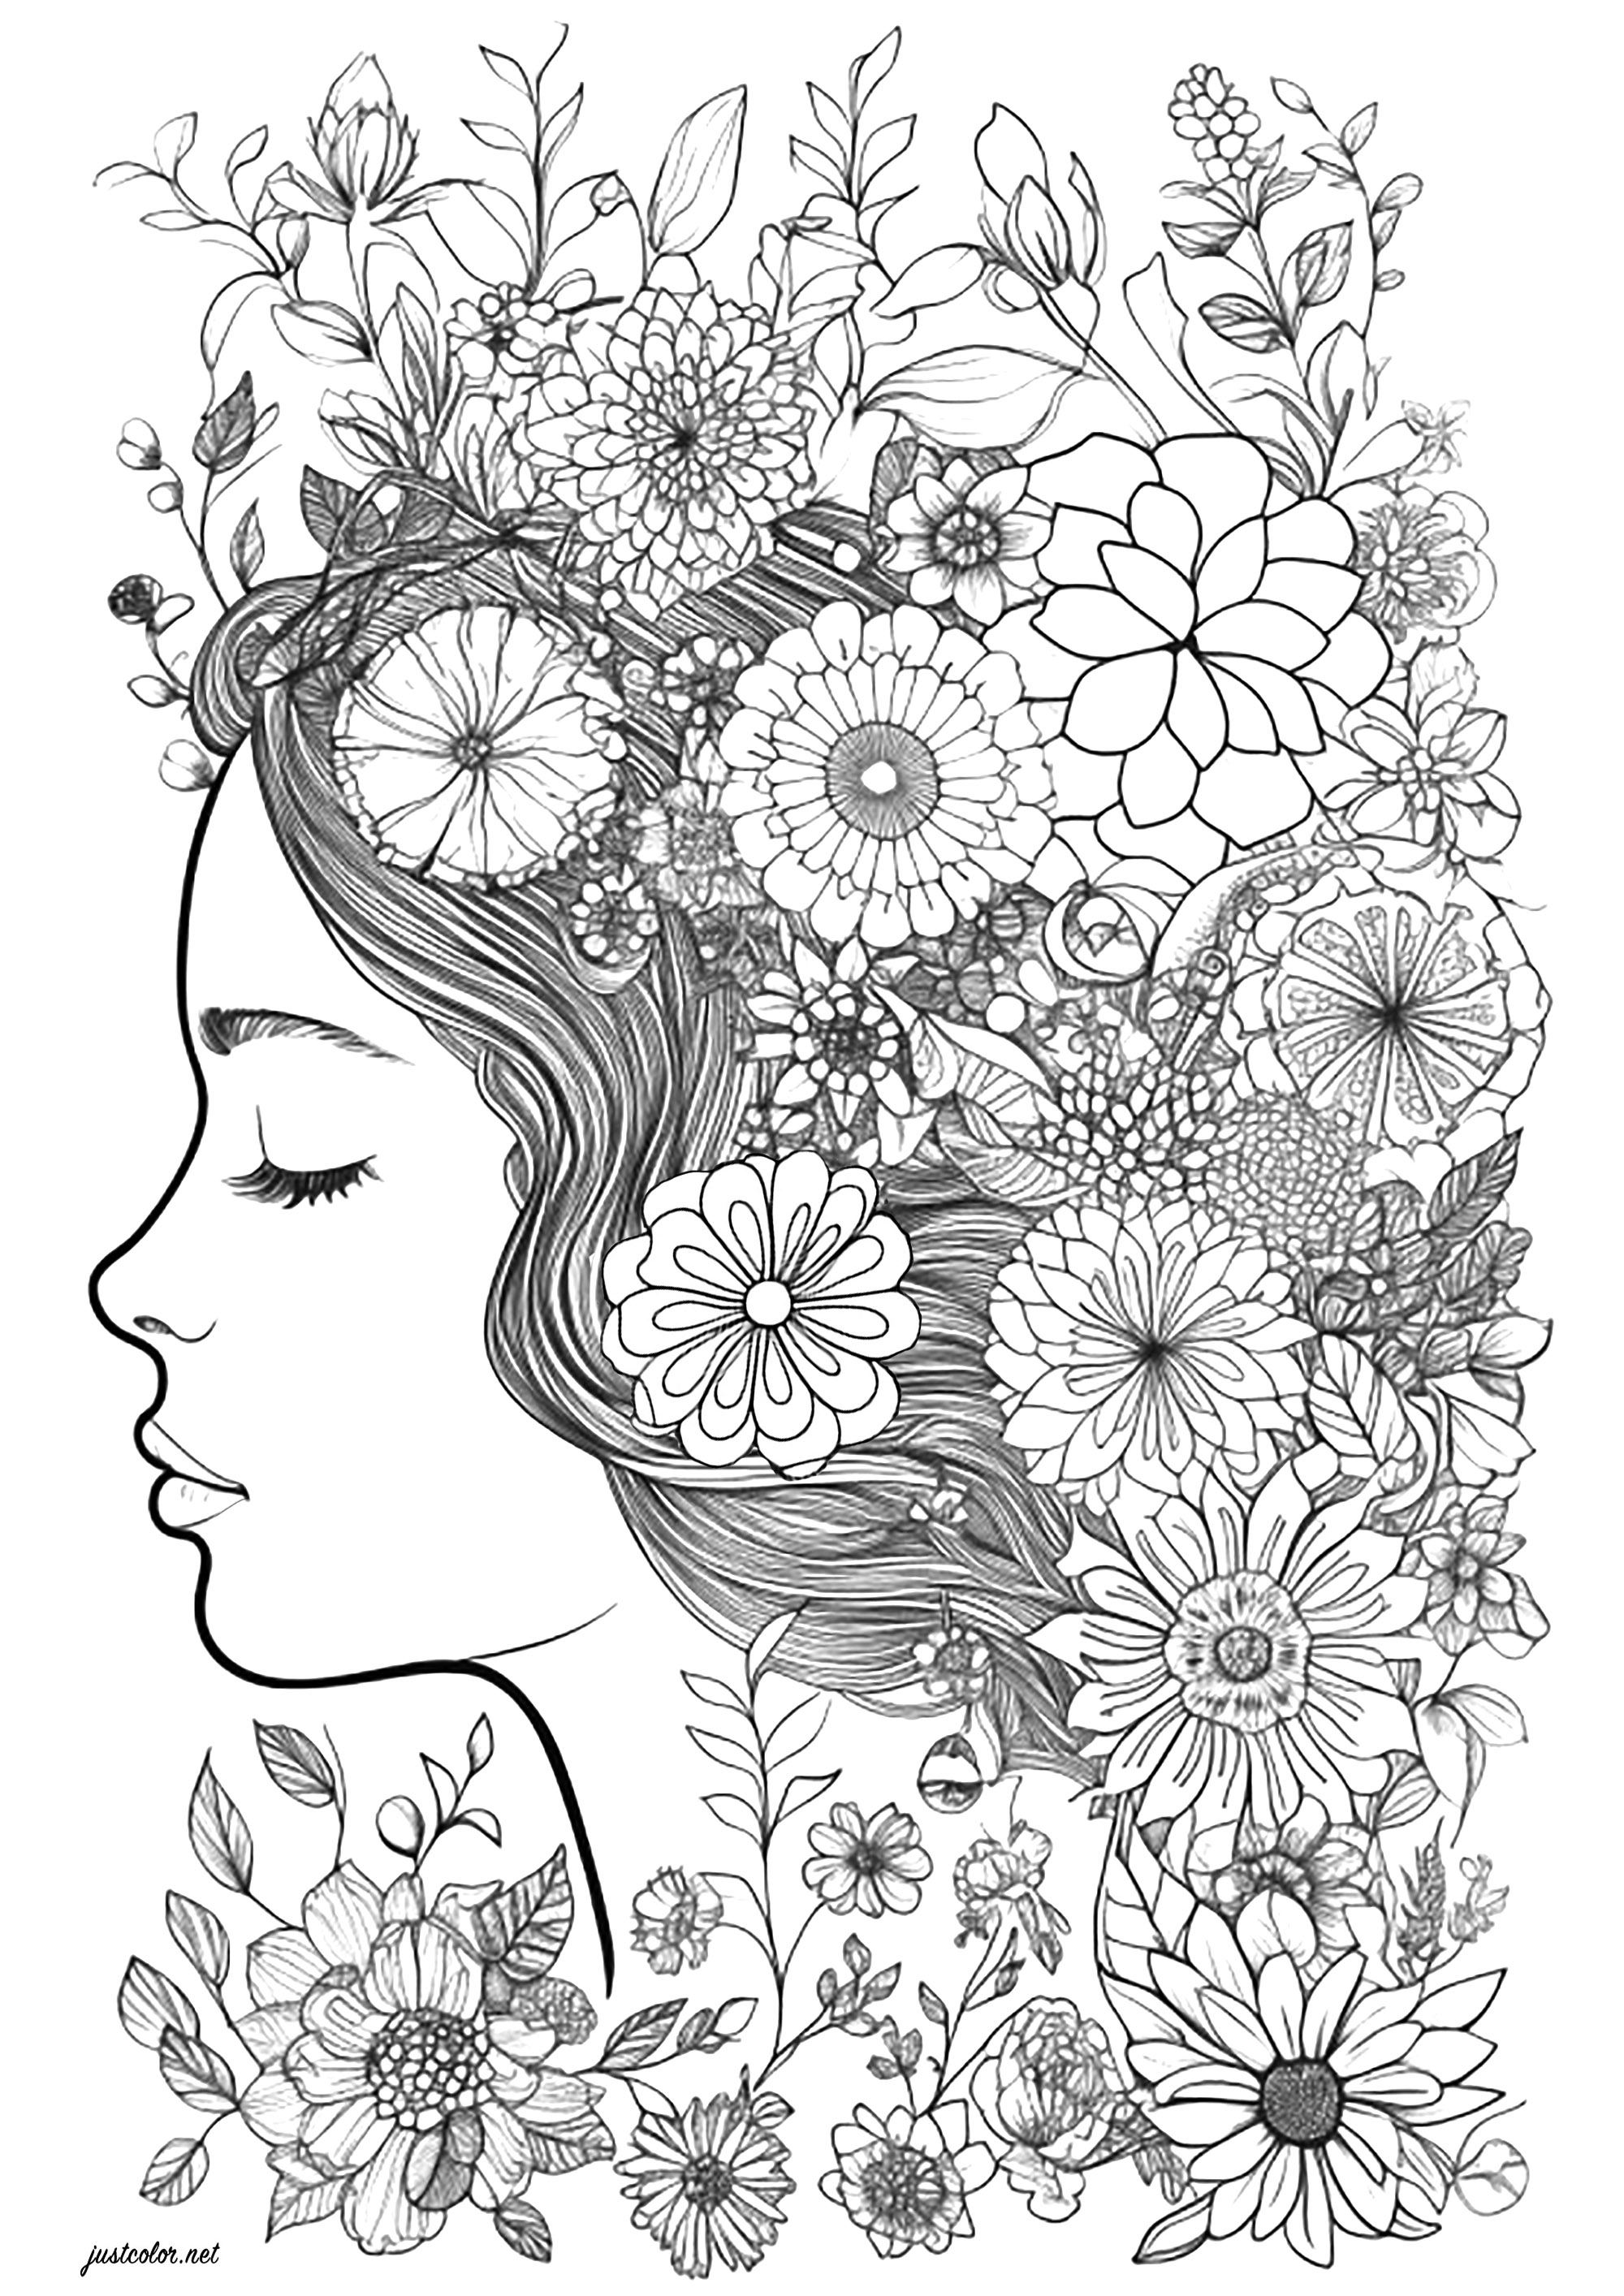 Rosto de uma mulher de olhos fechados, rodeado de floresColoração soberba do rosto de uma mulher de perfil, cujo cabelo está repleto de belas flores